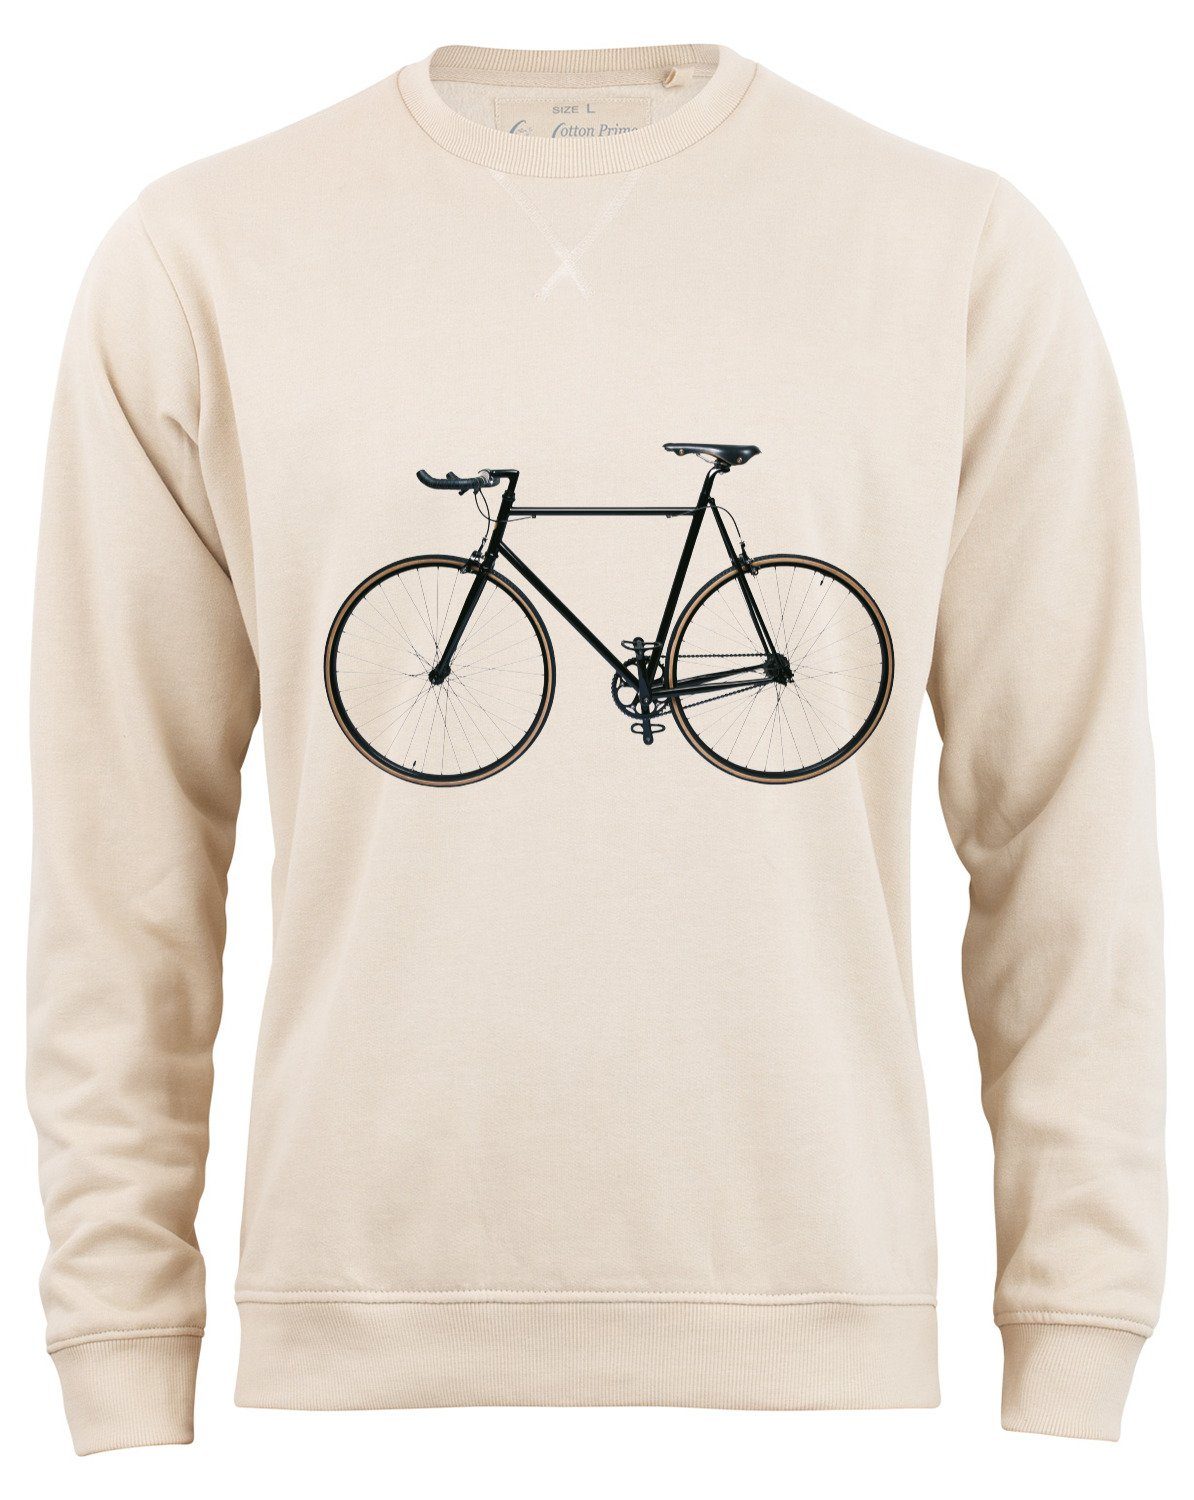 Beliebt 100 % Cotton Prime® Sweatshirt Bike-Fahrrad mit Innenfleece weichem Beige